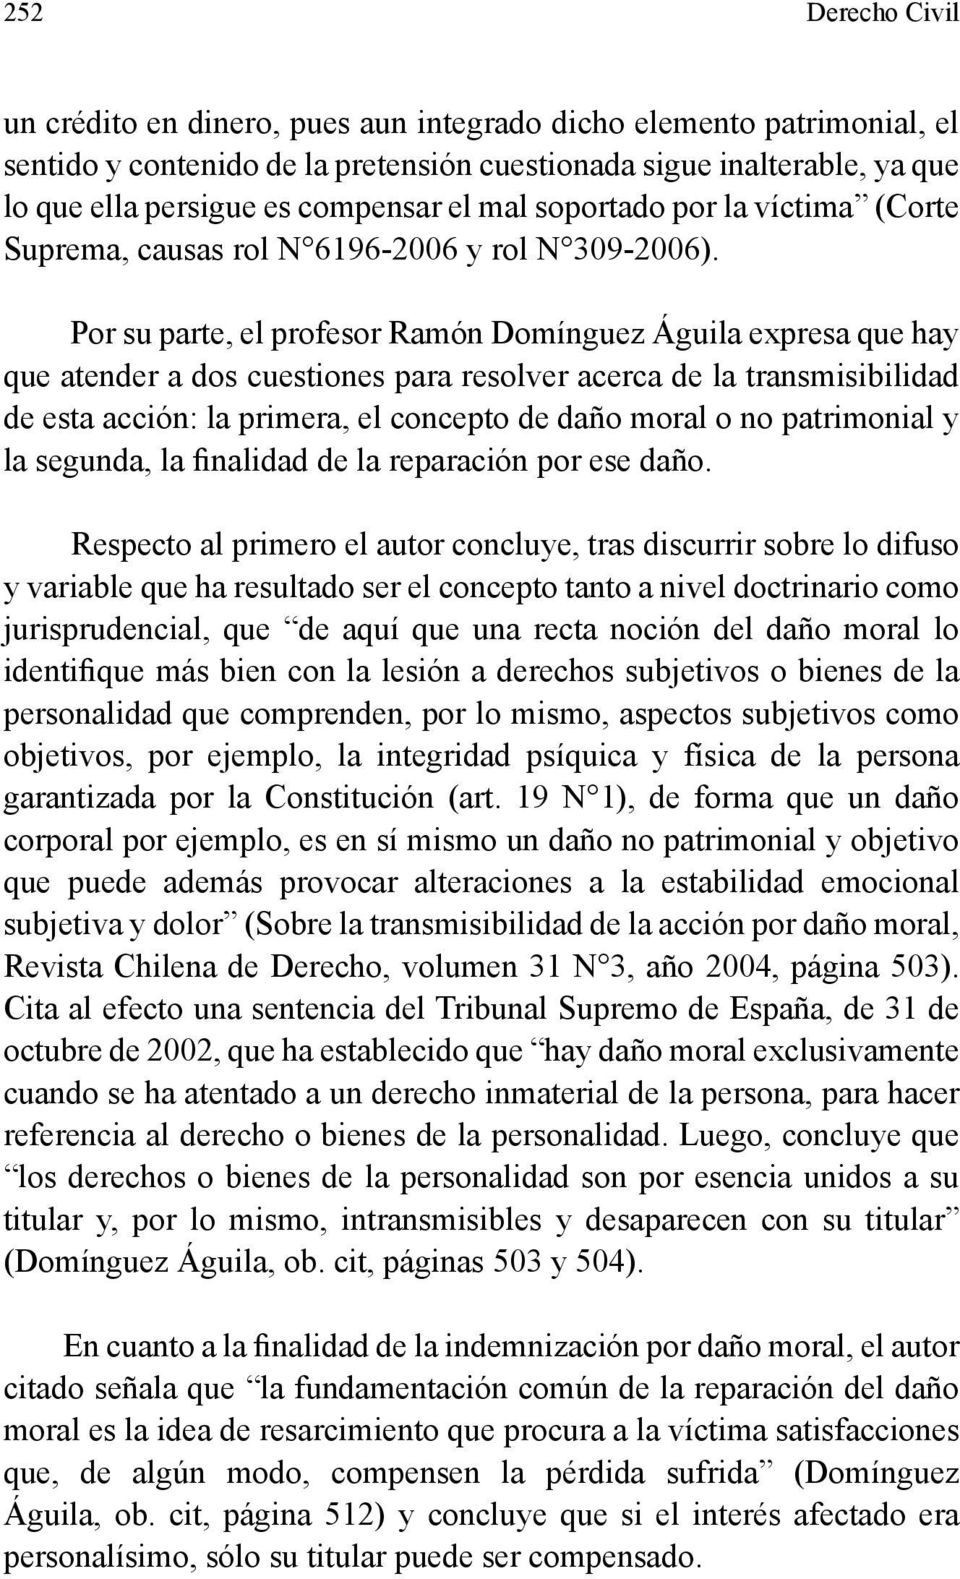 Por su parte, el profesor Ramón Domínguez Águila expresa que hay que atender a dos cuestiones para resolver acerca de la transmisibilidad de esta acción: la primera, el concepto de daño moral o no